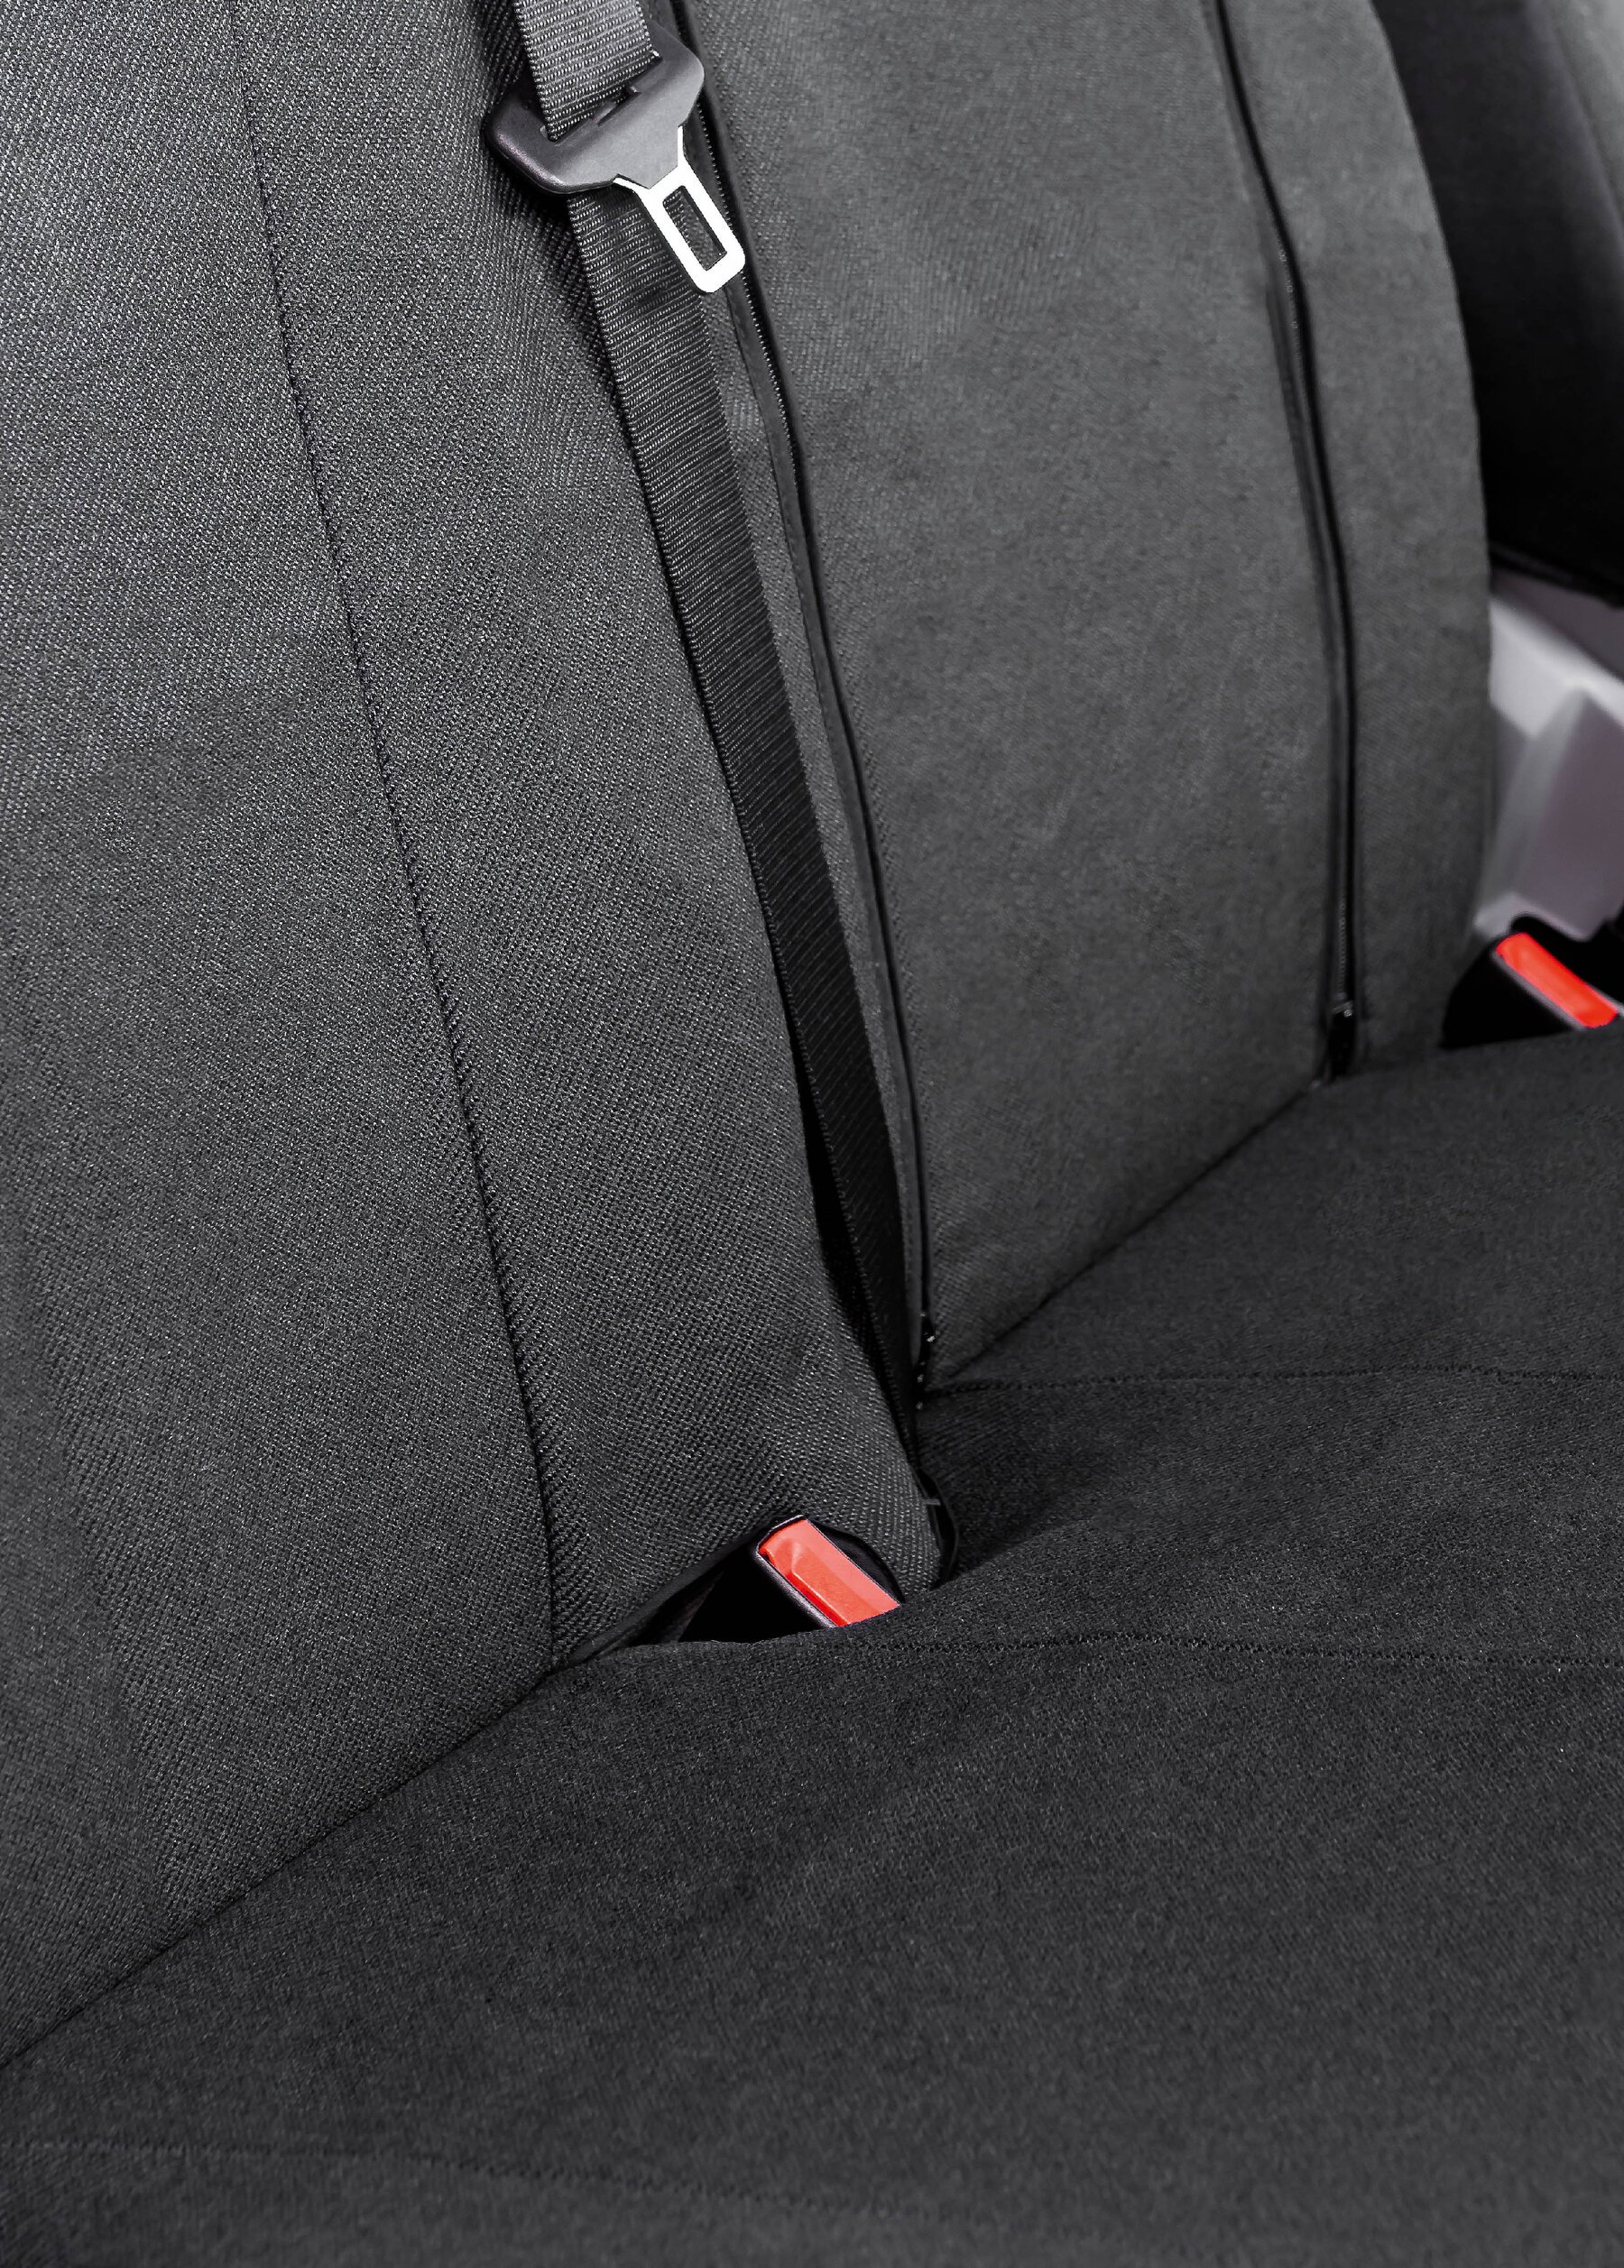 Passform Sitzbezug aus Stoff kompatibel mit VW Crafter, Mercedes Sprinter, Einzelsitz Armlehne innen & Doppelbank klappbar